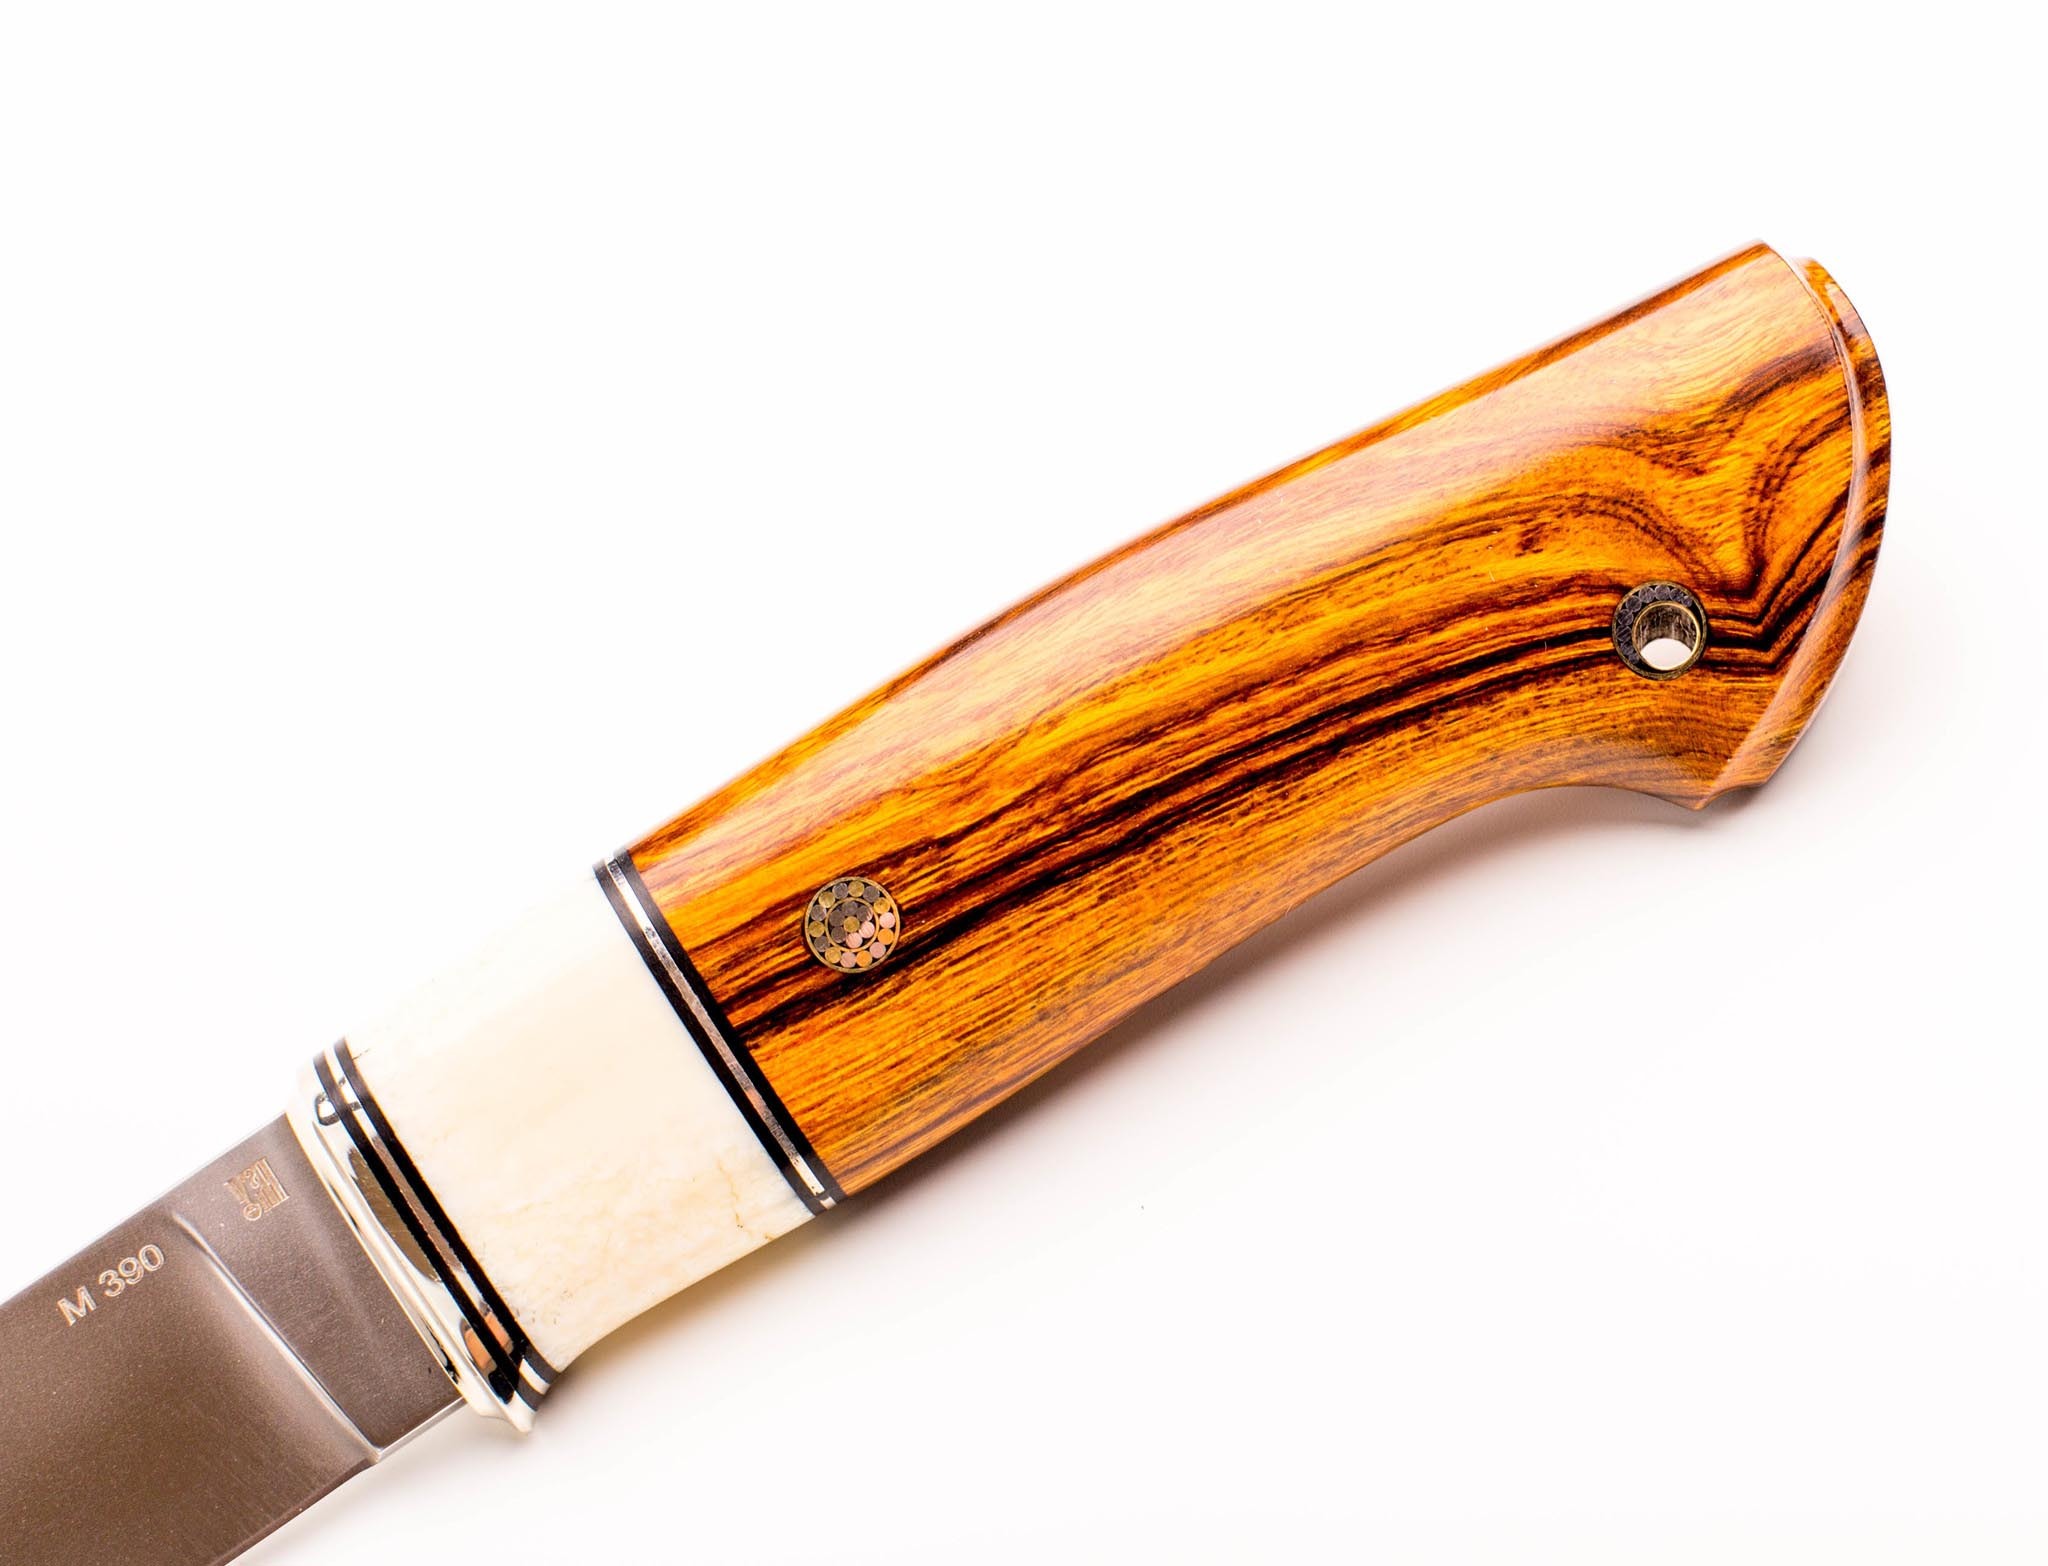 Нож Лидер 3, сталь M390, железное дерево, вставка рог лося - фото 2